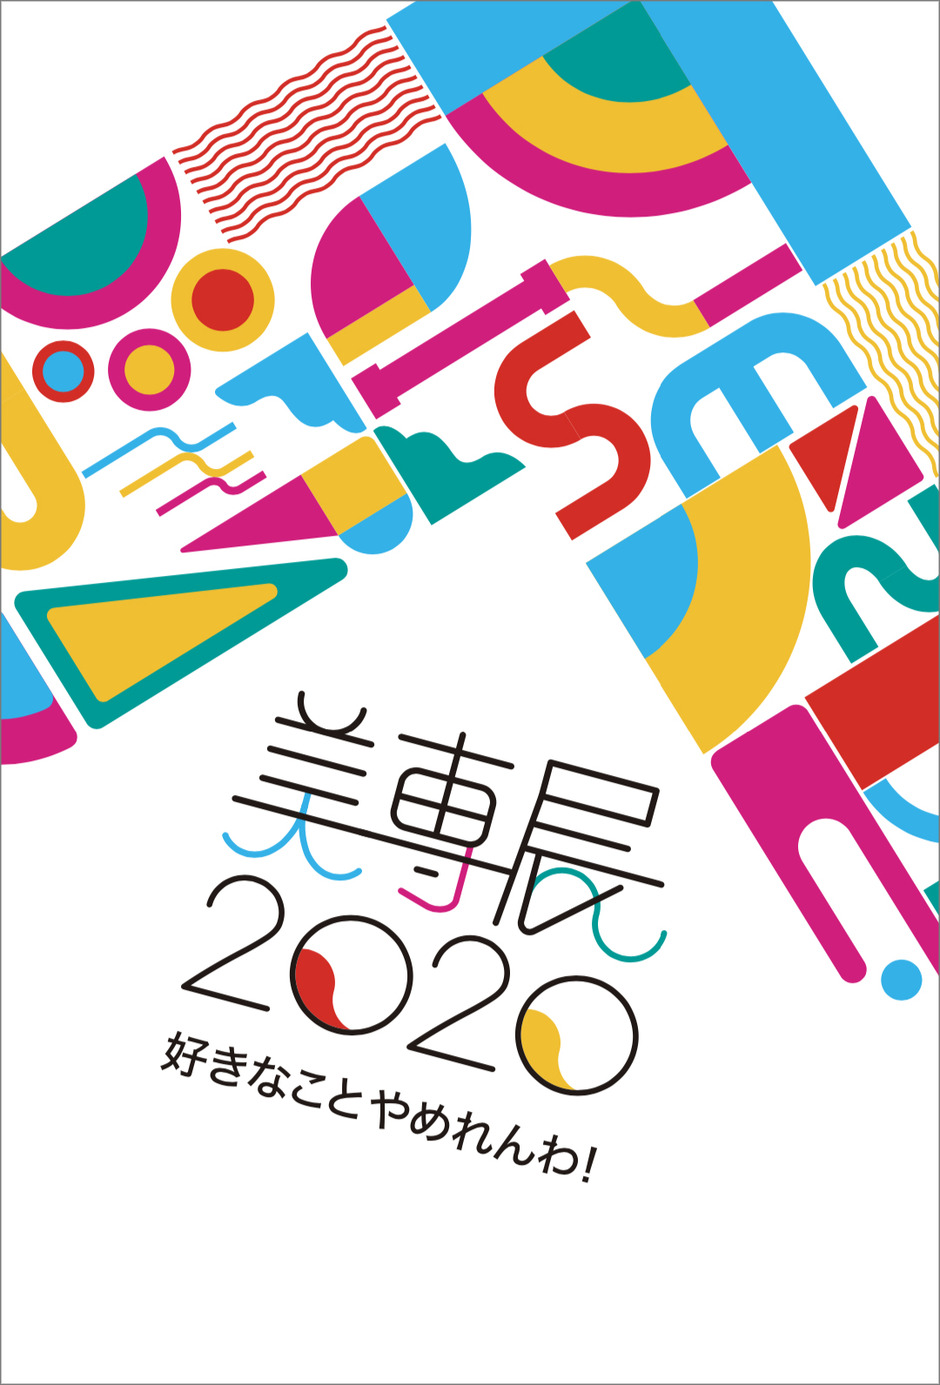 ２/28(金)〜3/1(日)、美専展2020を開催します